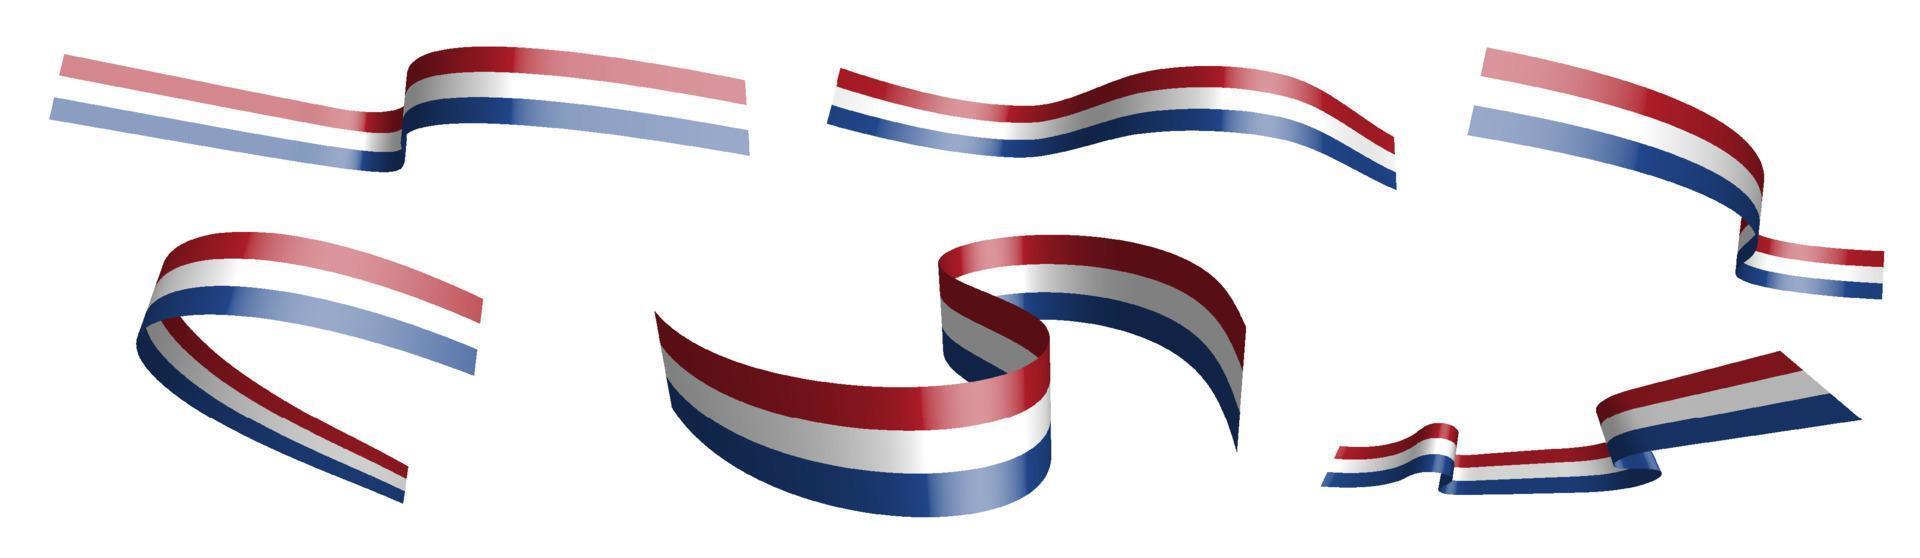 uppsättning av Semester band. flagga av holland, nederländerna vinkar i vind. separation in i lägre och övre skikten. design element. vektor på vit bakgrund